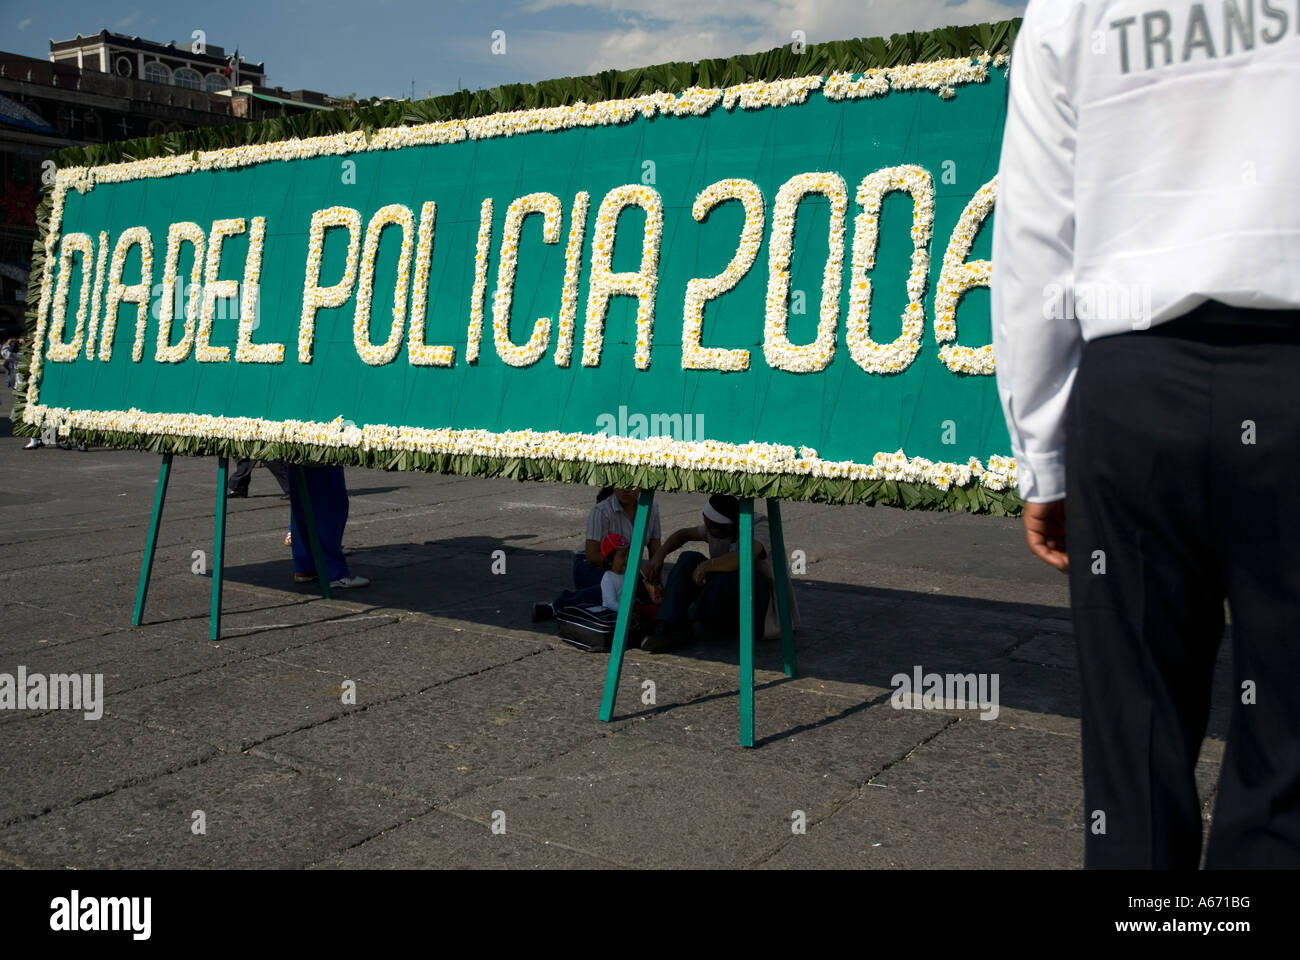 police day in plaza de la constitucion - main mexico city square Stock Photo